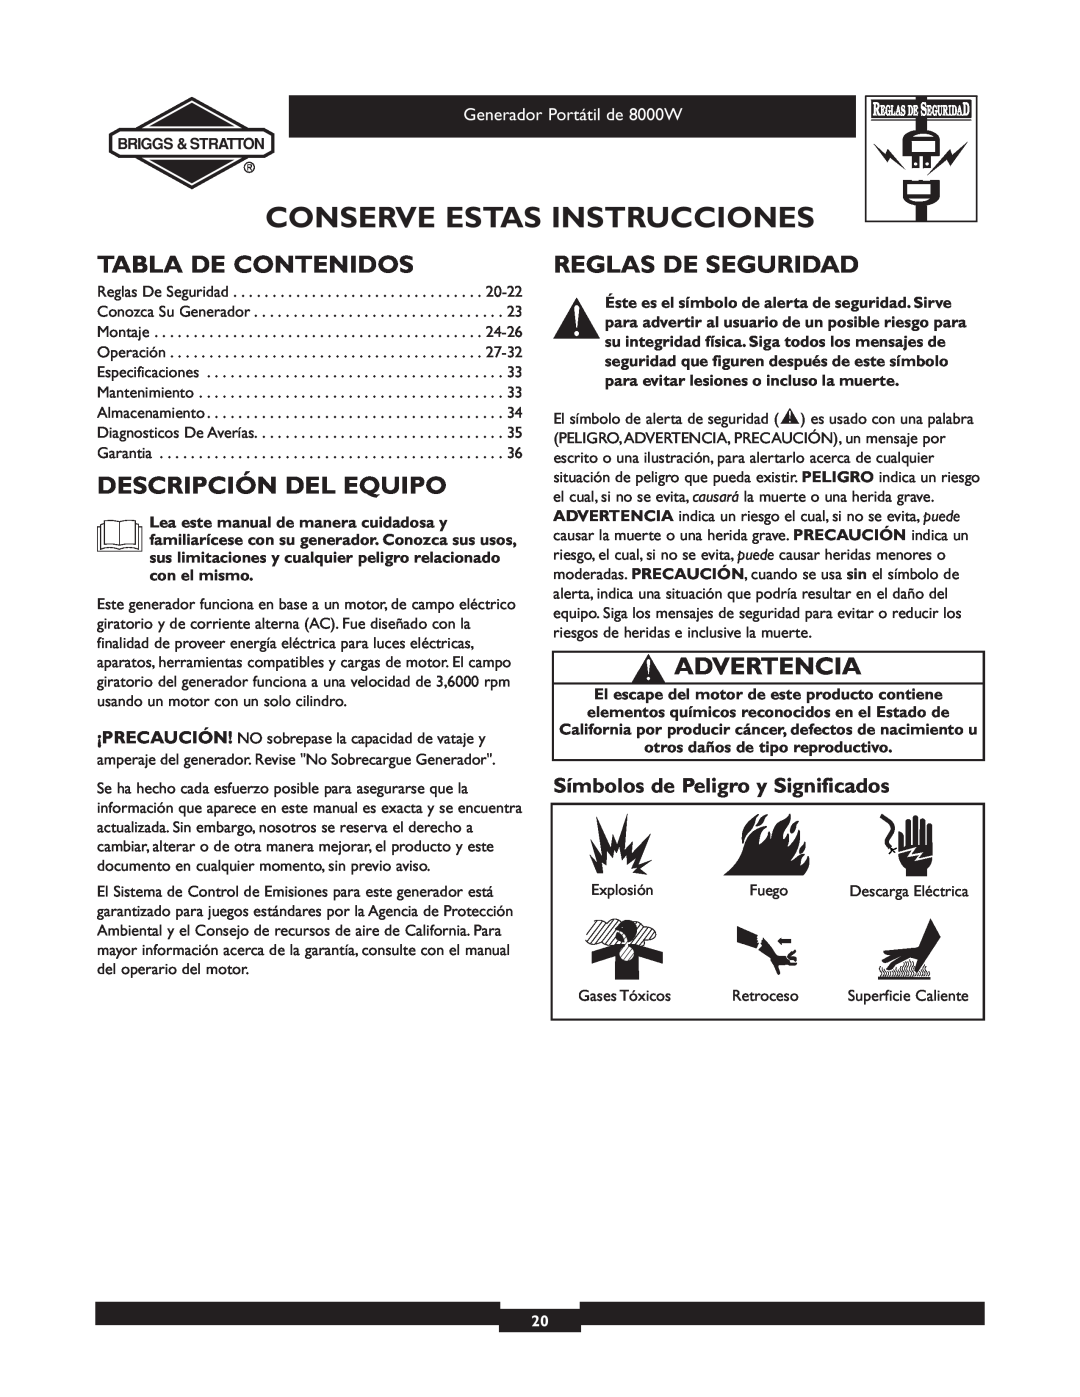 Briggs & Stratton 030210-2 manual Tabla De Contenidos, Descripción Del Equipo, Reglas De Seguridad, Advertencia 